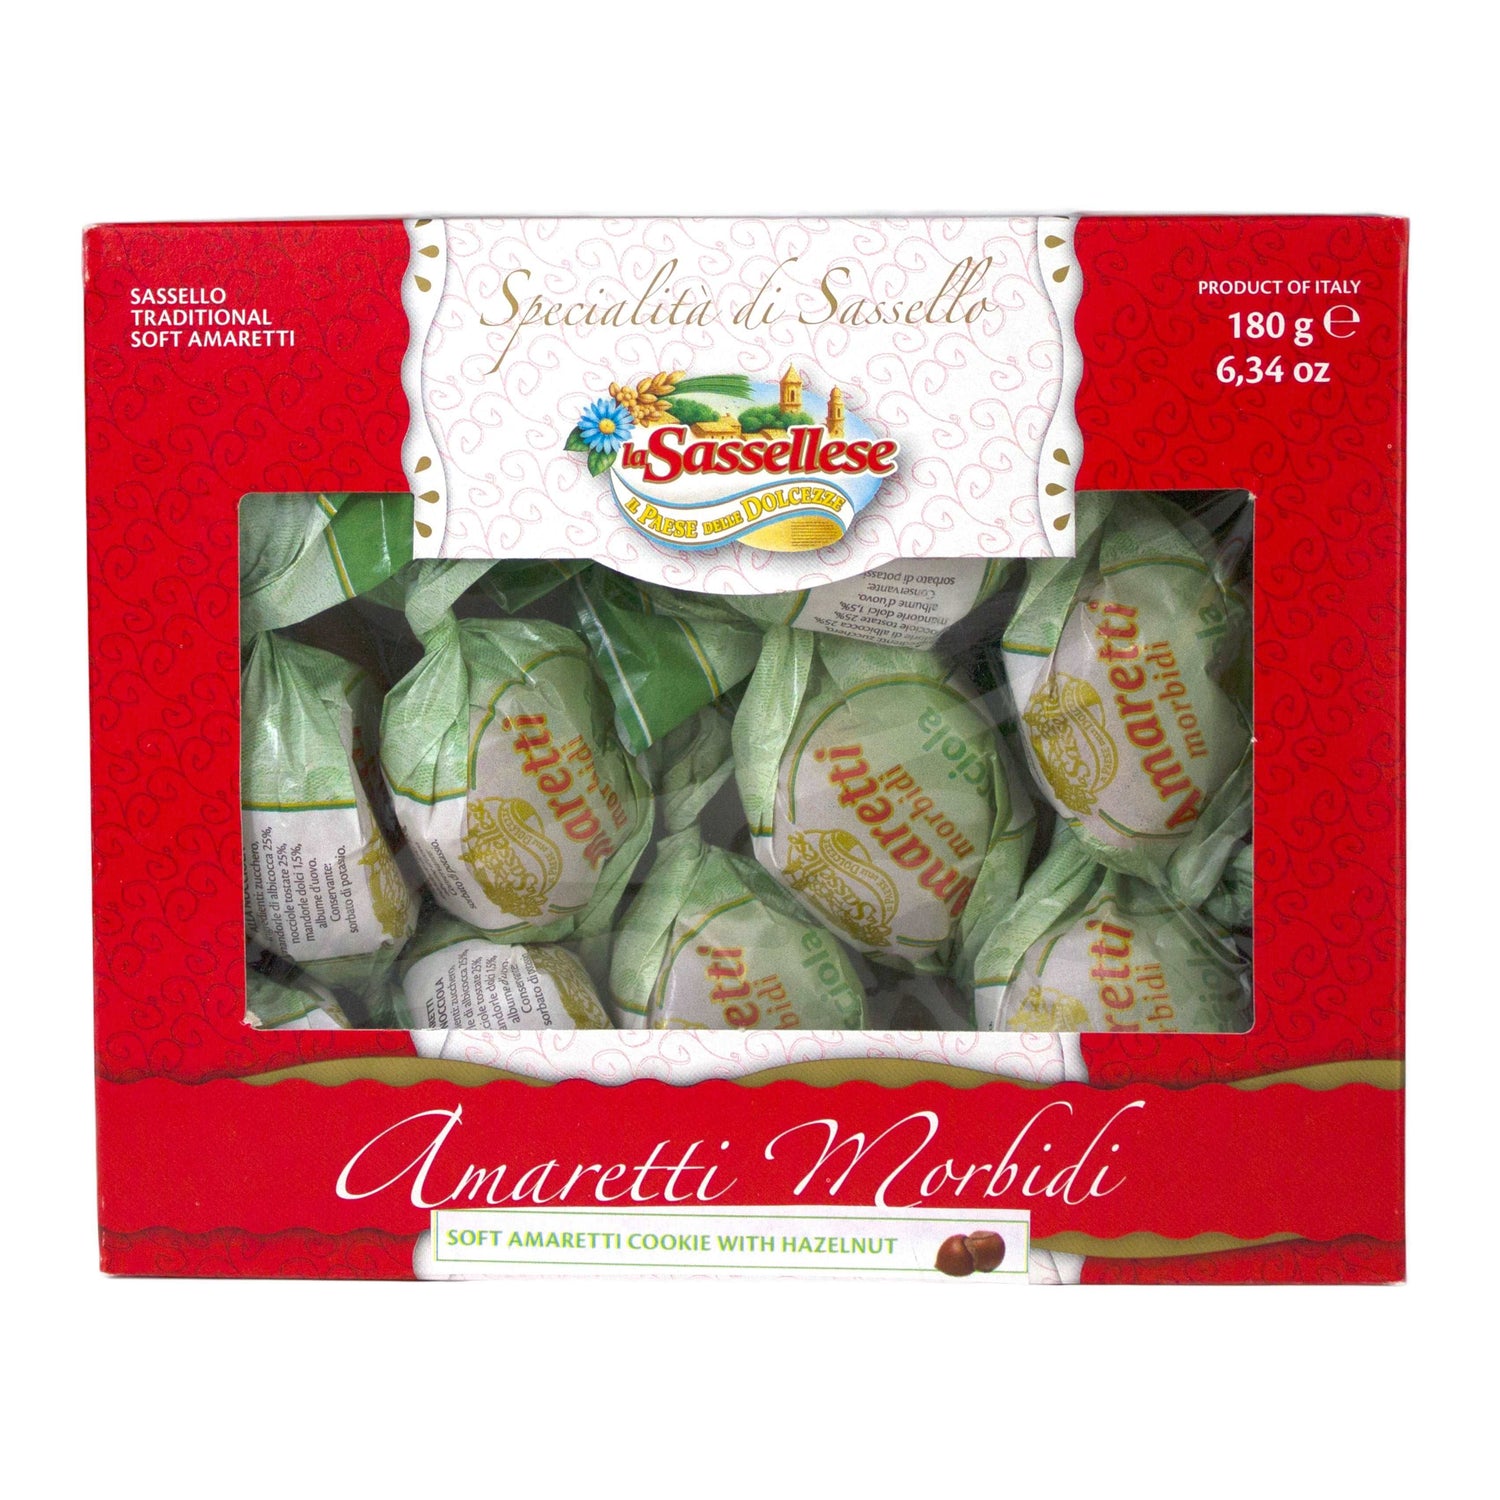 La Sassellese Soft Amaretti with Hazelnuts